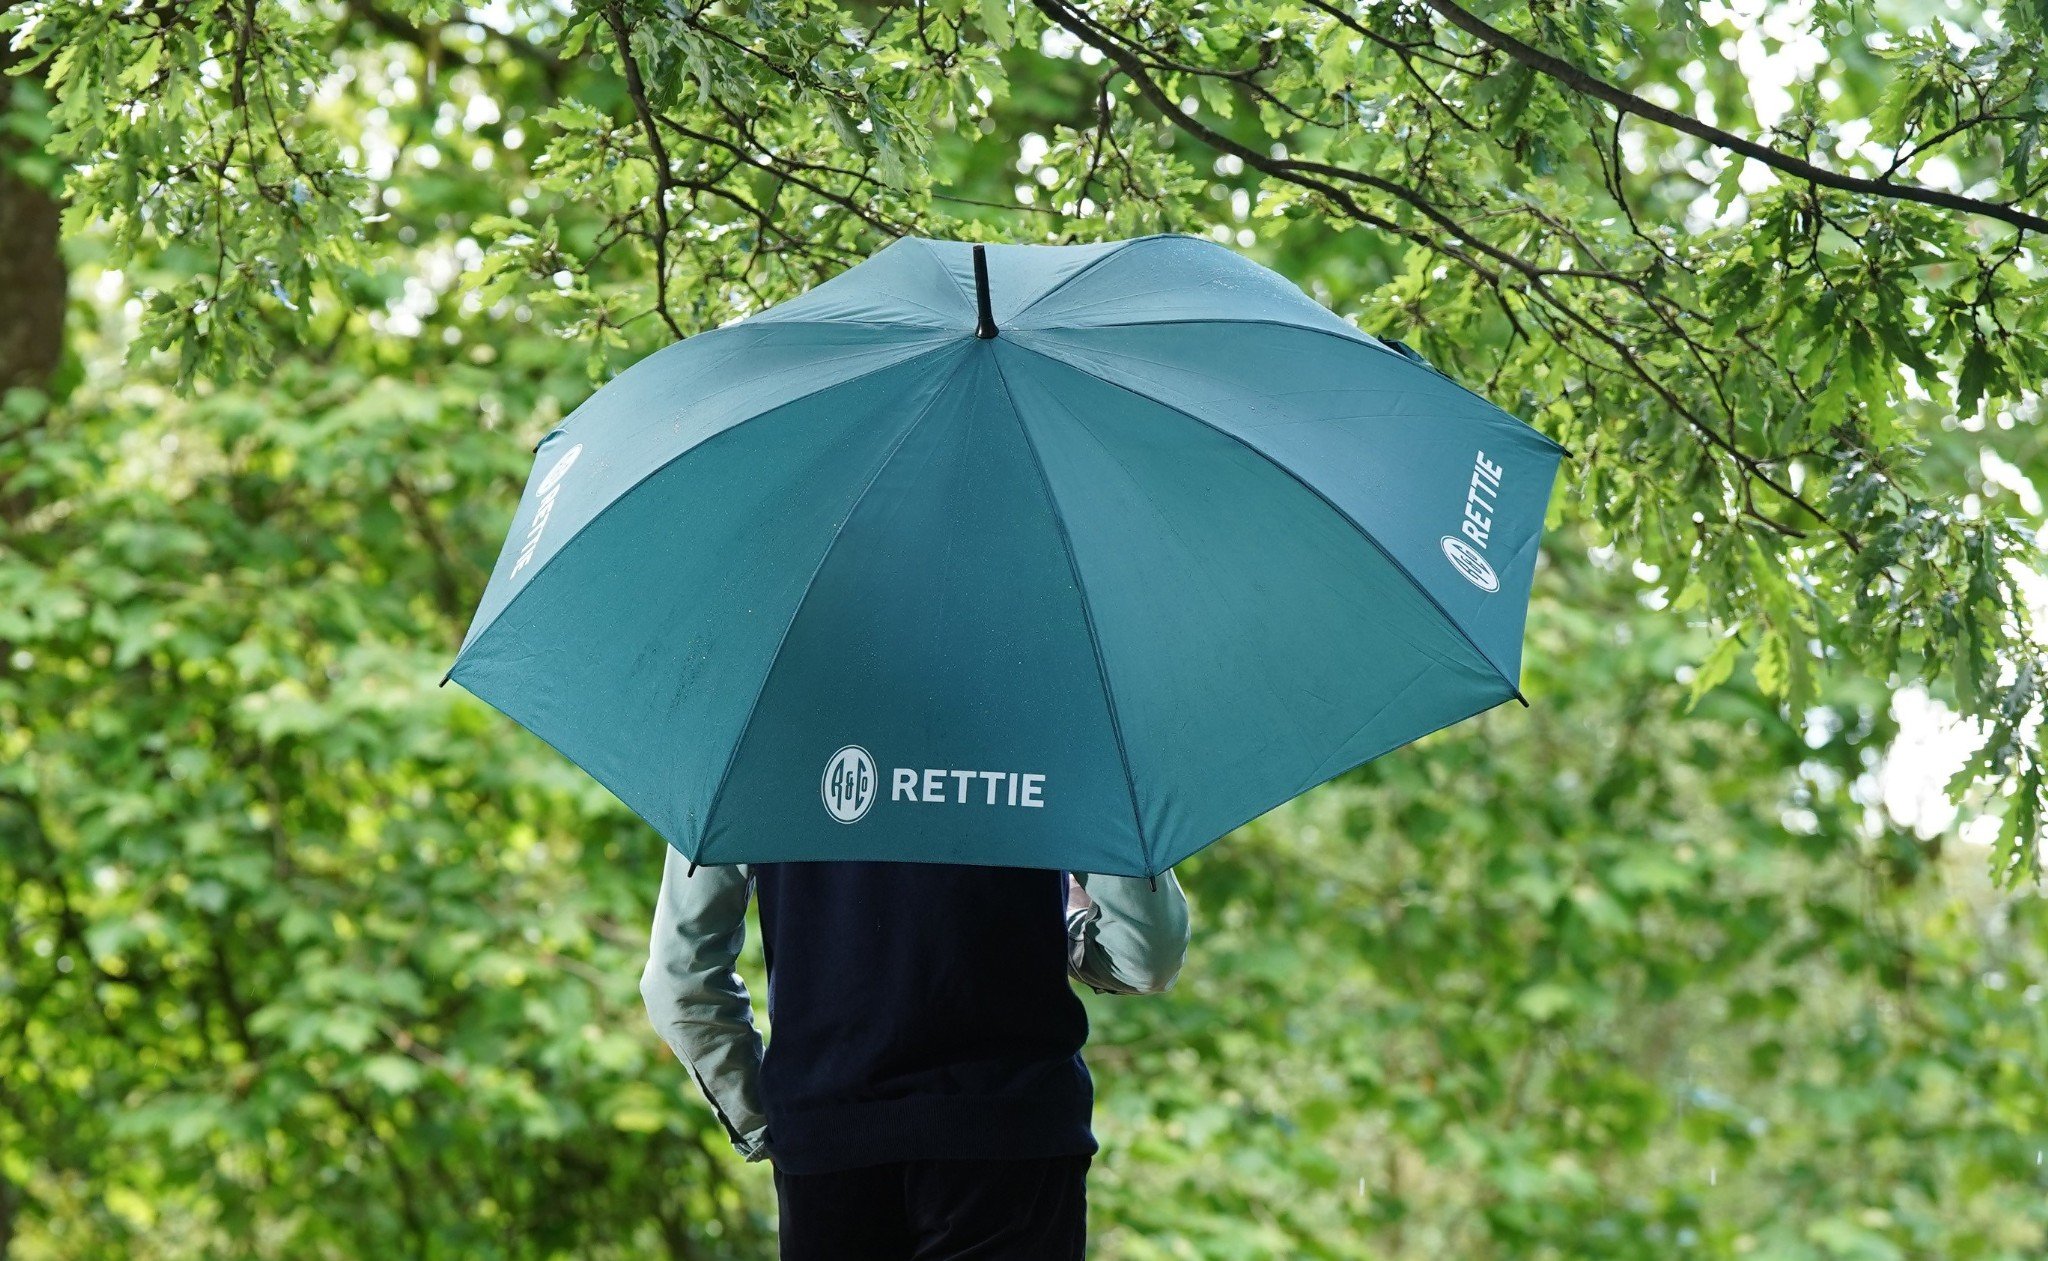 Rettie team member under umbrella